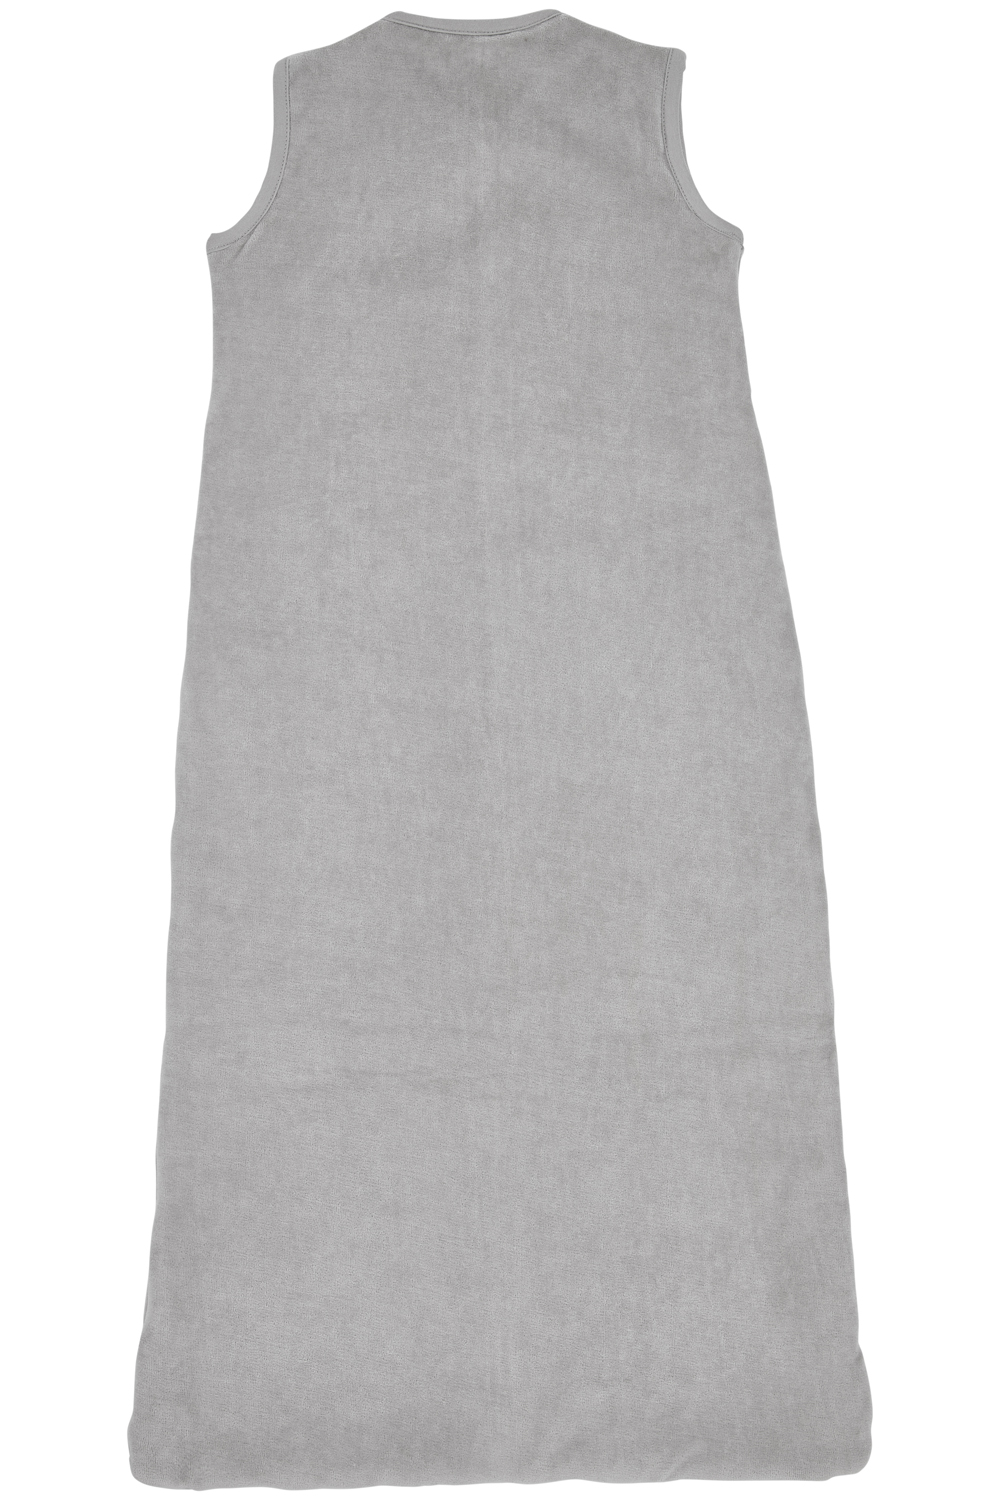 Schlafsack Gefüttert Velvet - light grey - 90cm